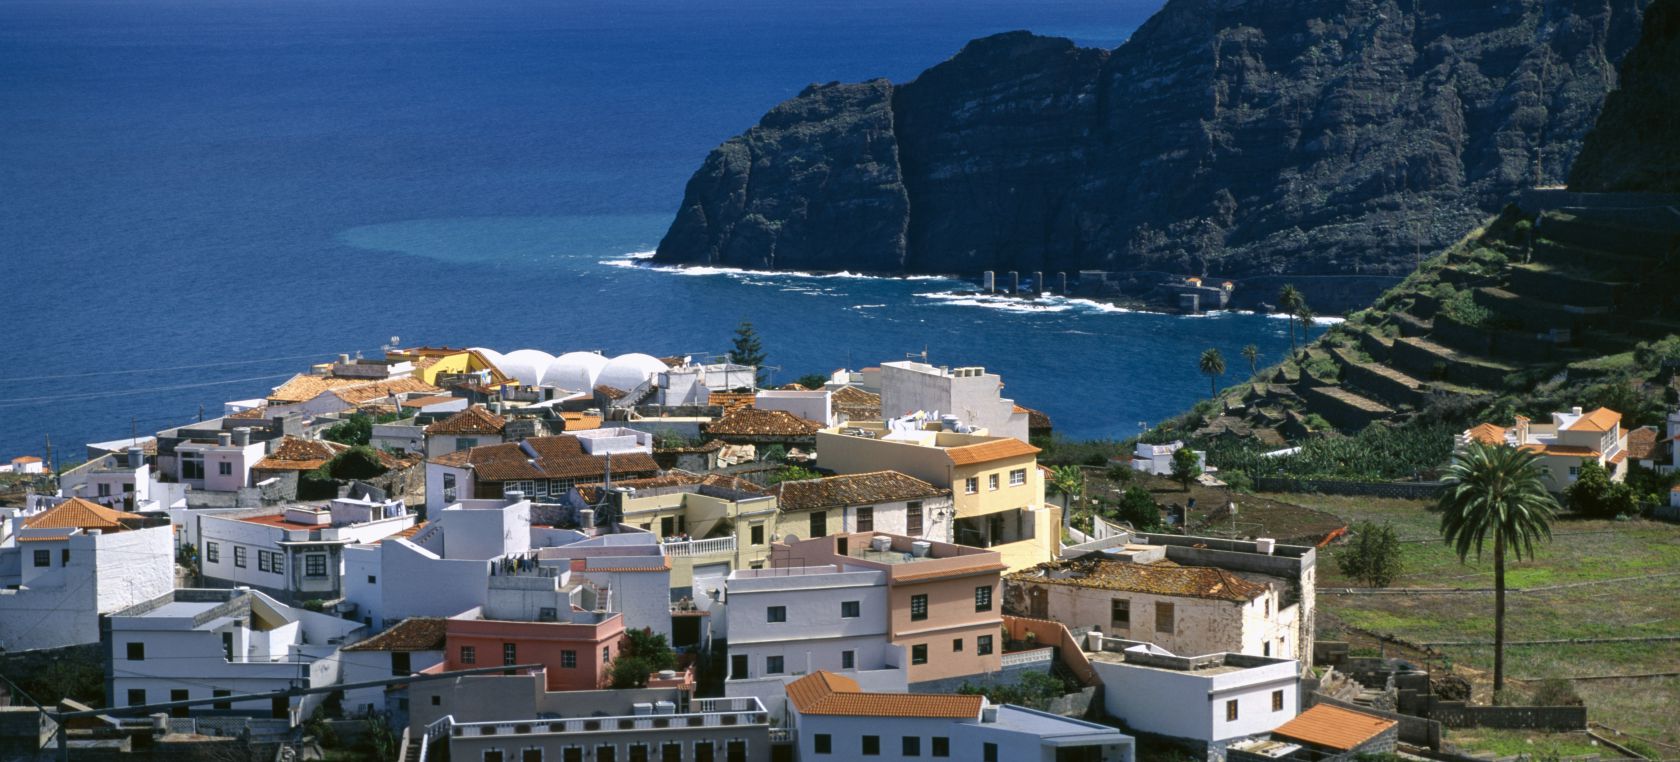 Los 20 pueblos más bonitos de España a ojos de la prensa extranjera